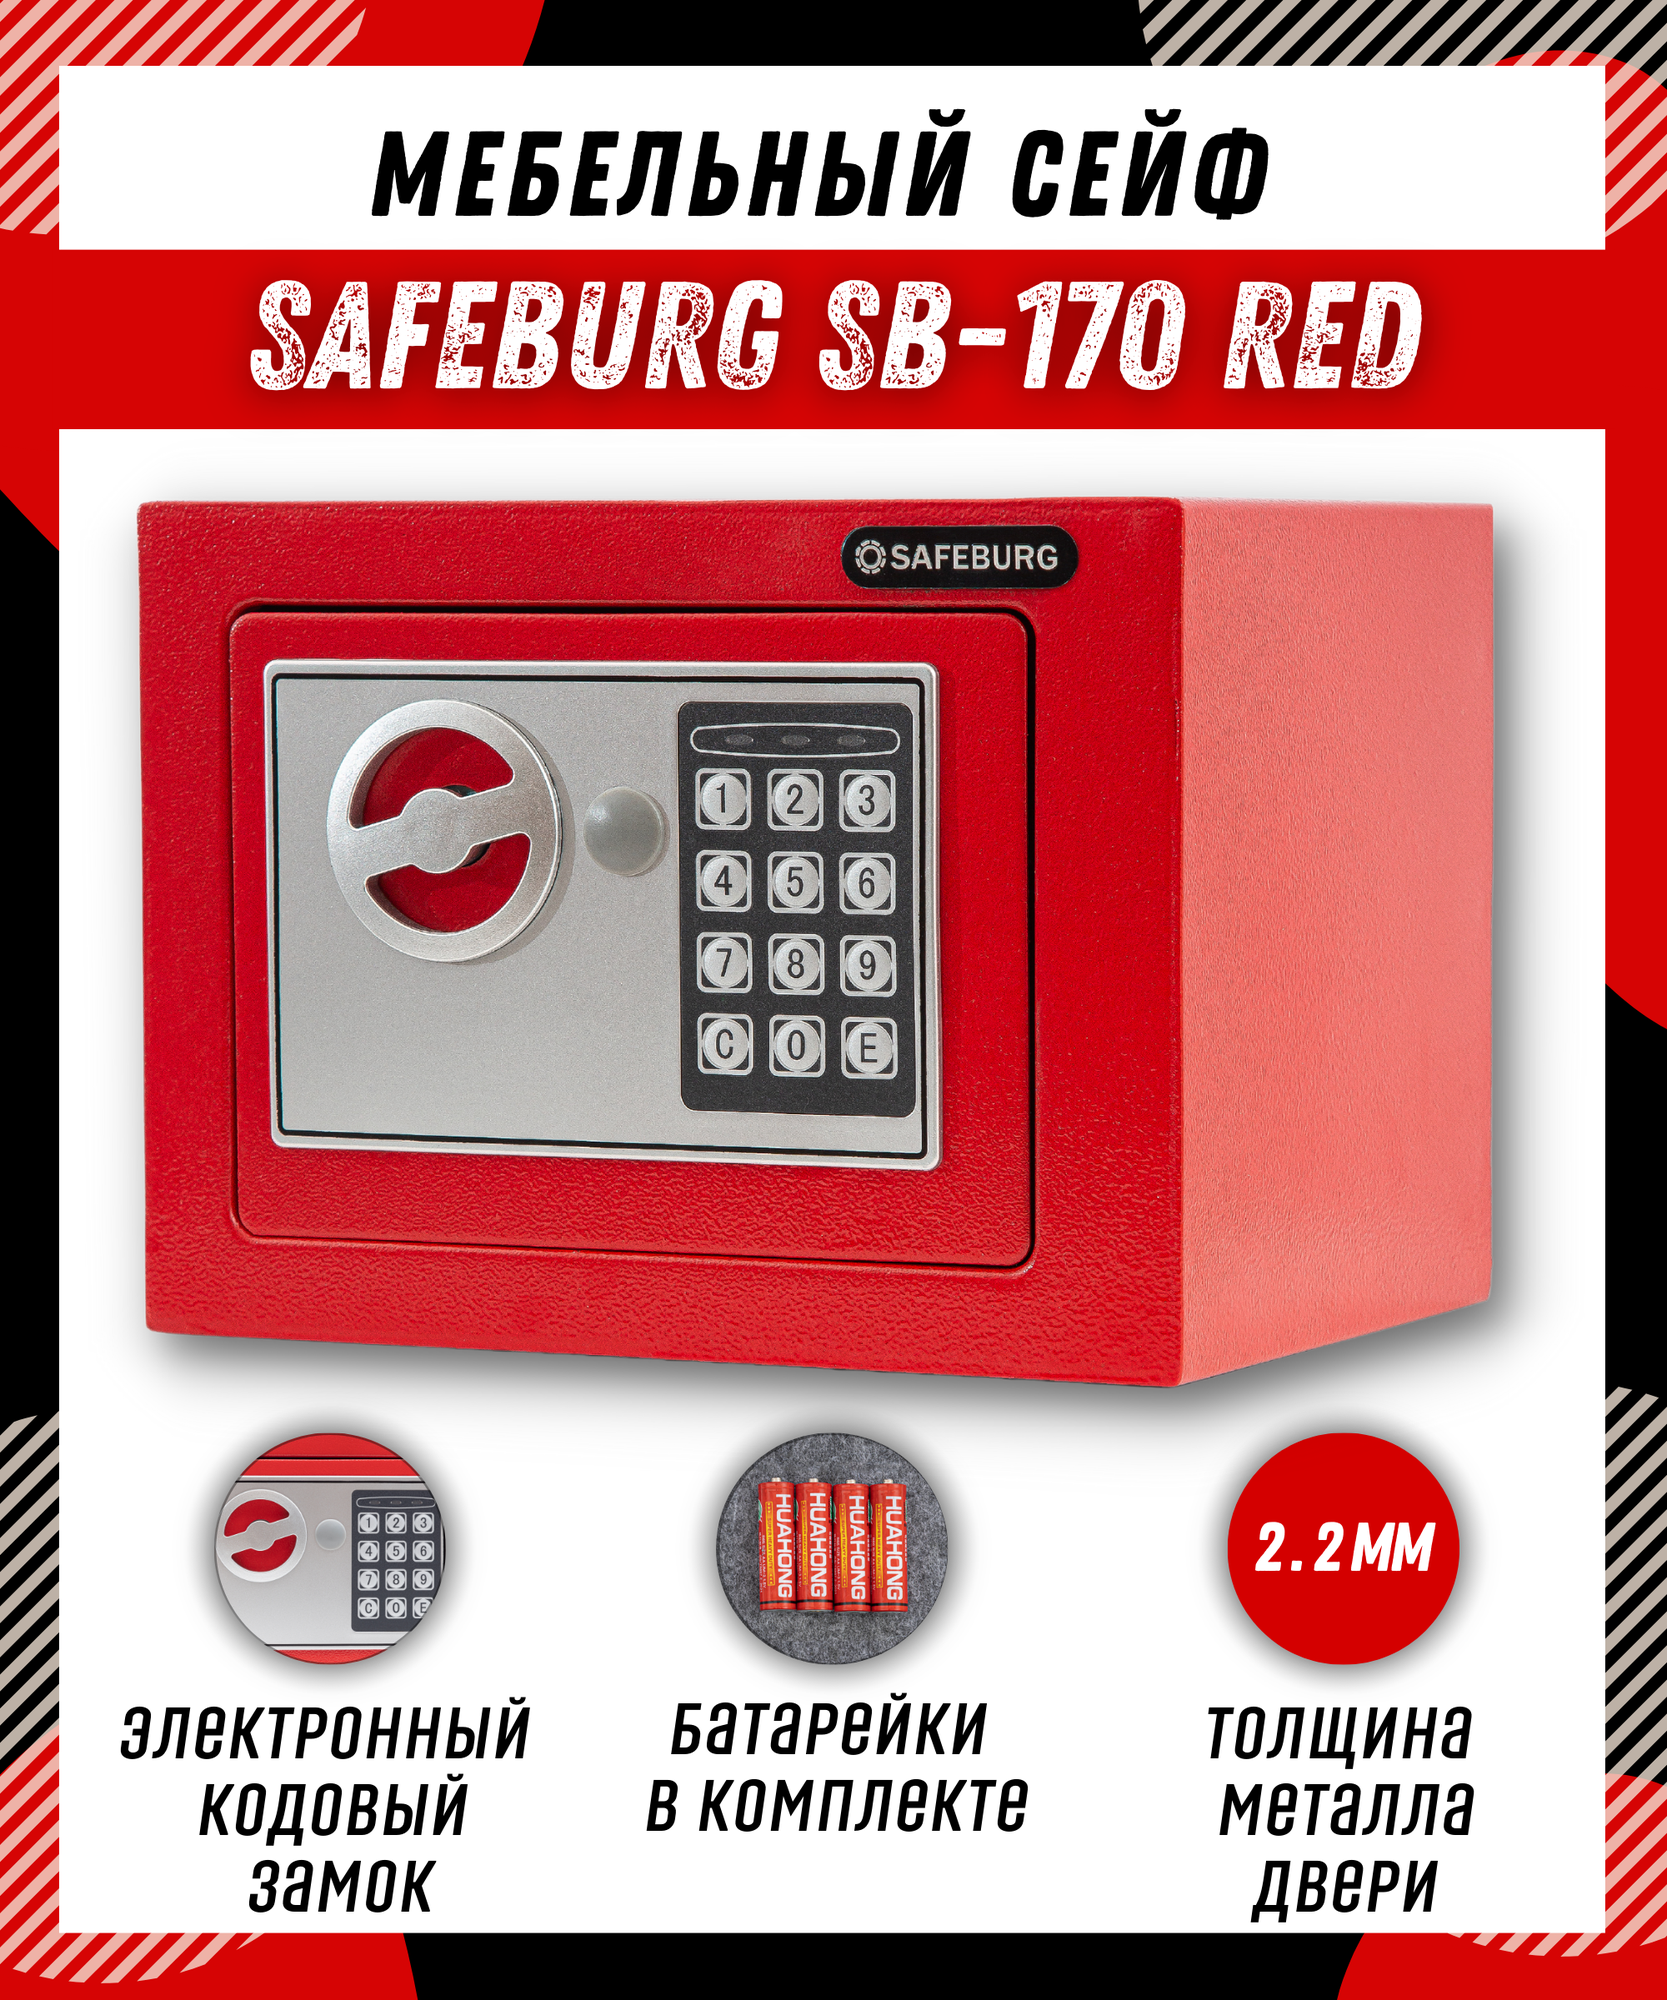 Сейф для денег и документов SAFEBURG SB-170 RED с электронным кодовым замком, для дома/квартиры/офиса, 17х23х17 см